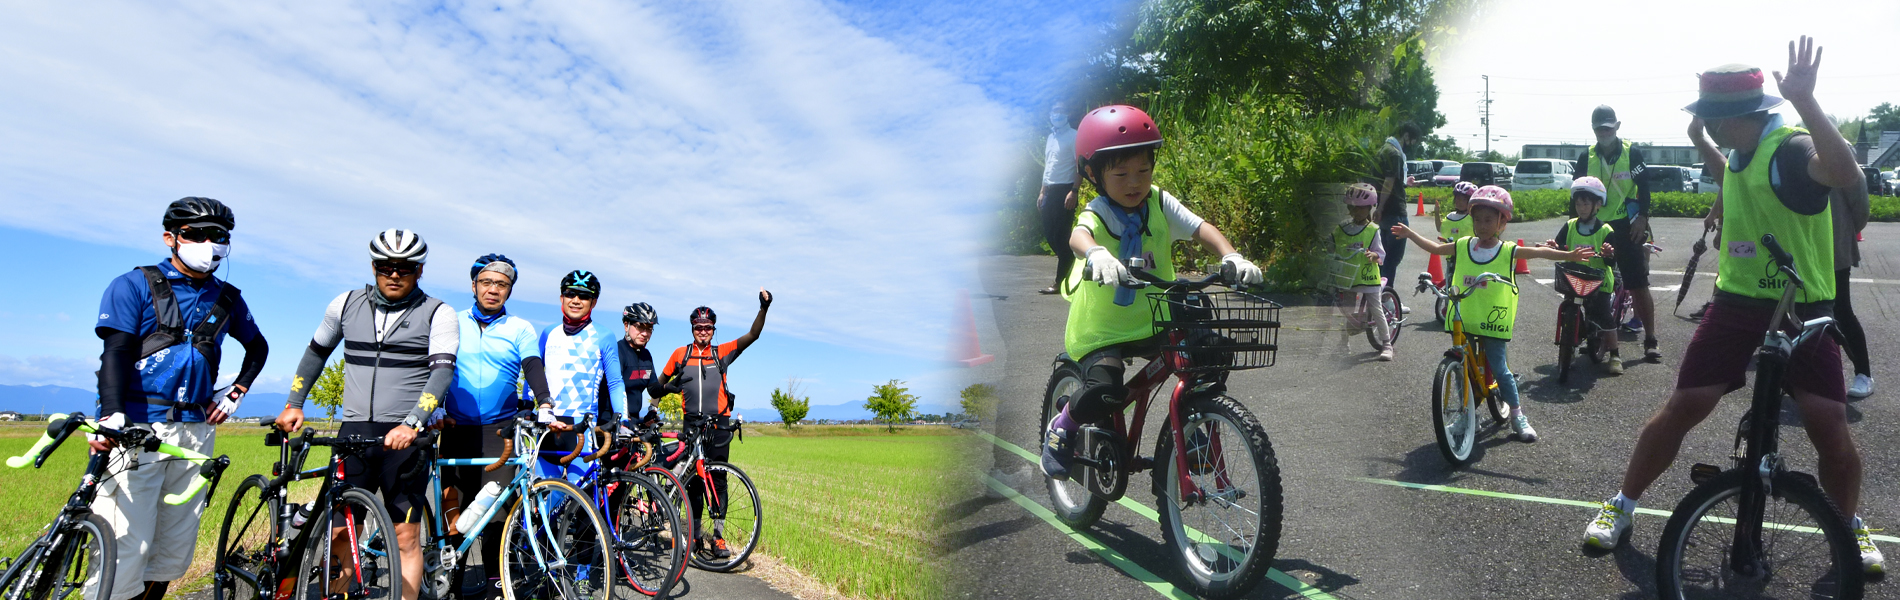 サイクリングツアーイベントや各種自転車教室イベントなどをご検討の方のお手伝いをさせていただきます。当協会では経験豊かなサイクリングツアーガイドや自転車教室講師の派遣を行っております。